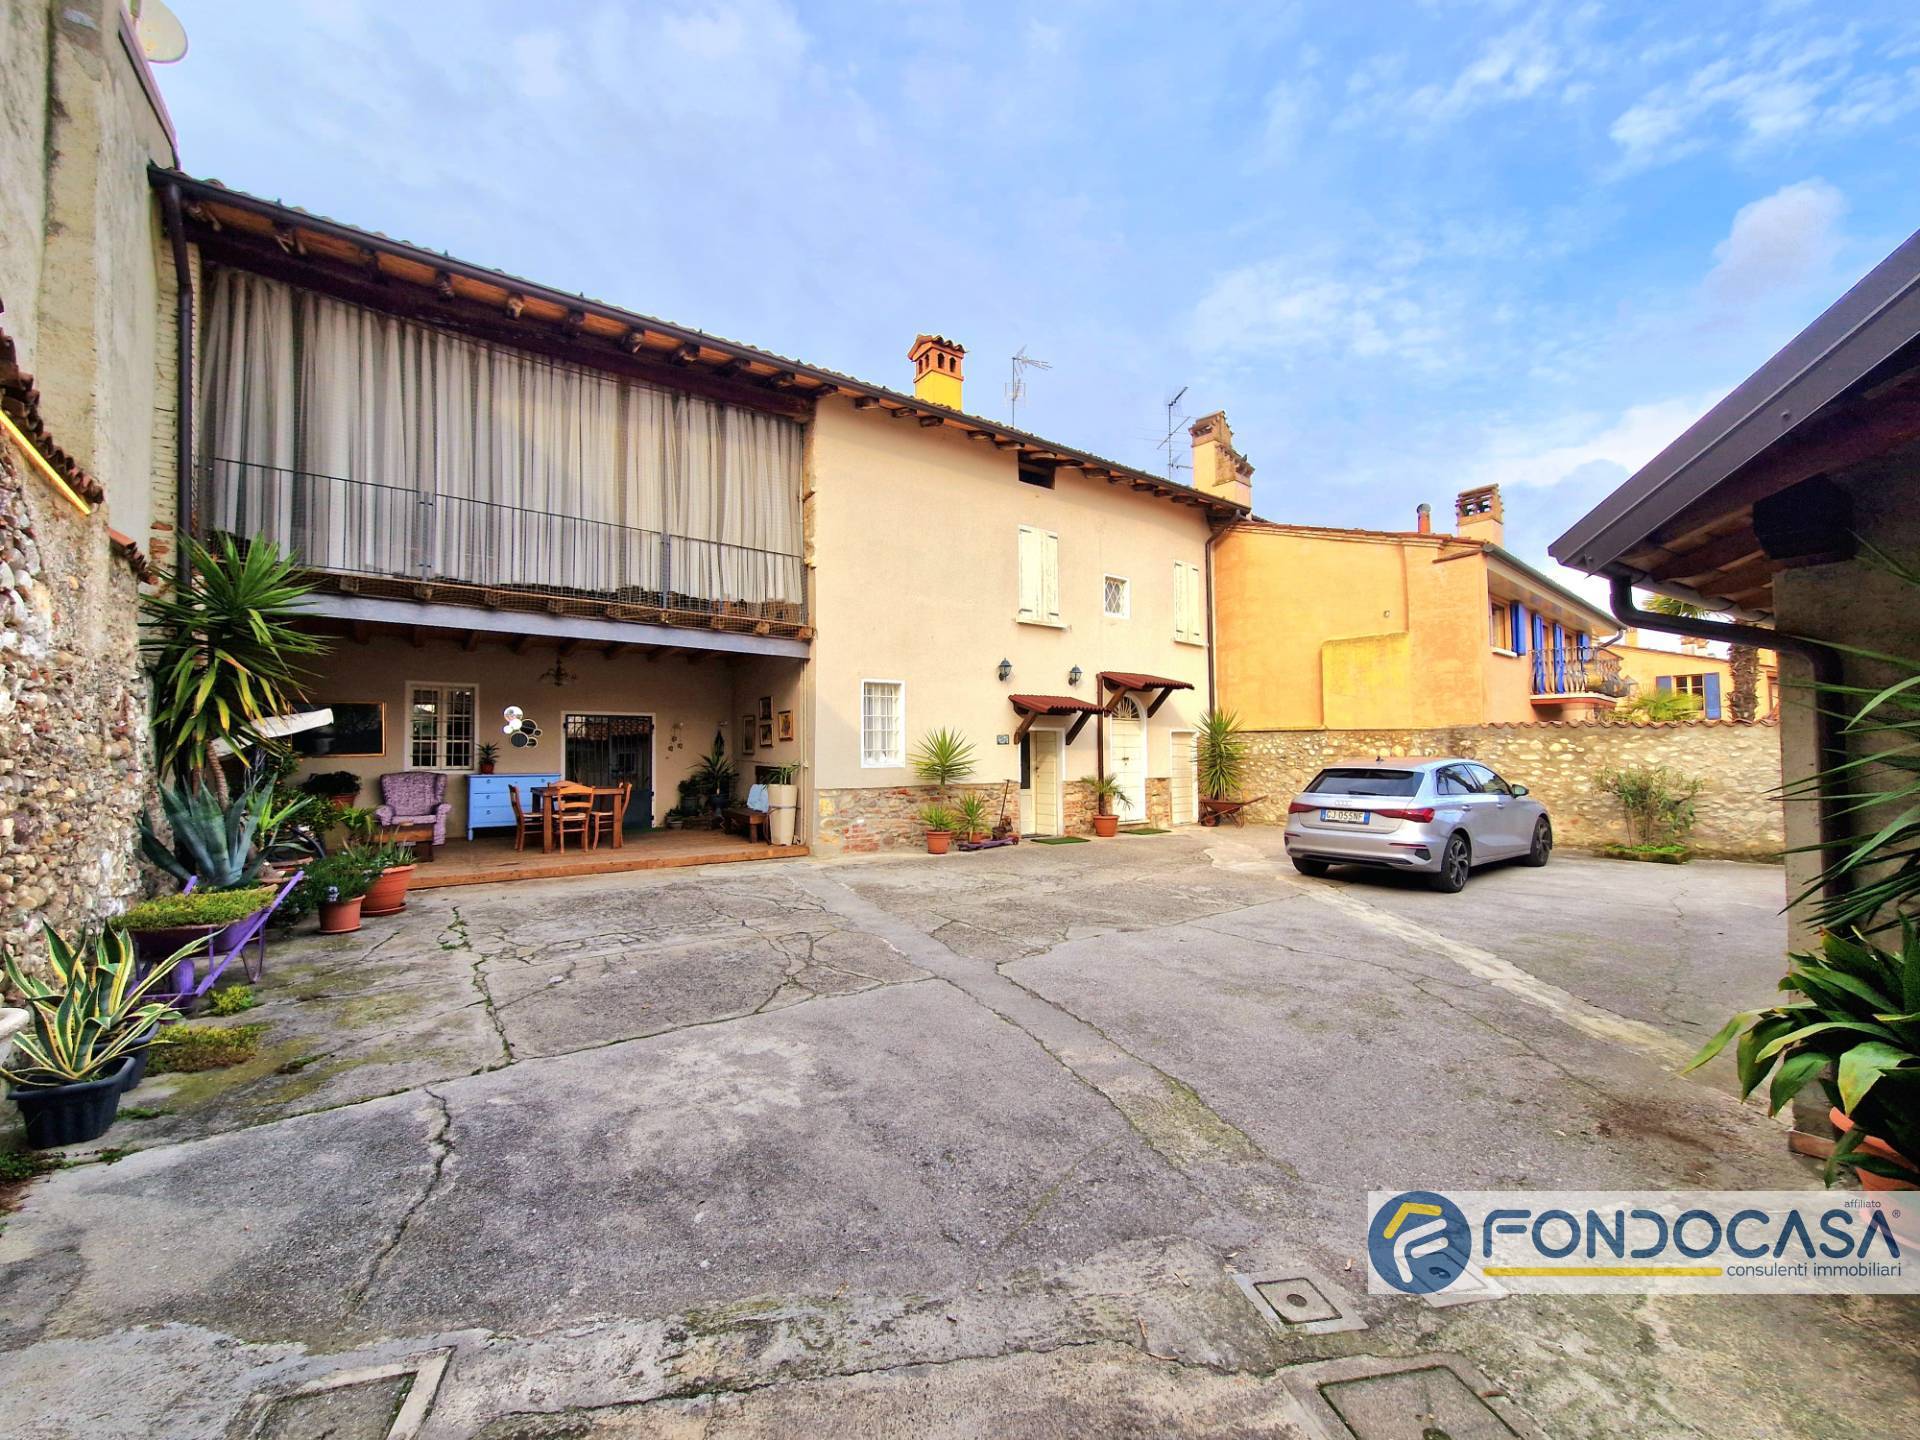 Villa in vendita a Paderno Franciacorta, 10 locali, prezzo € 530.000 | PortaleAgenzieImmobiliari.it